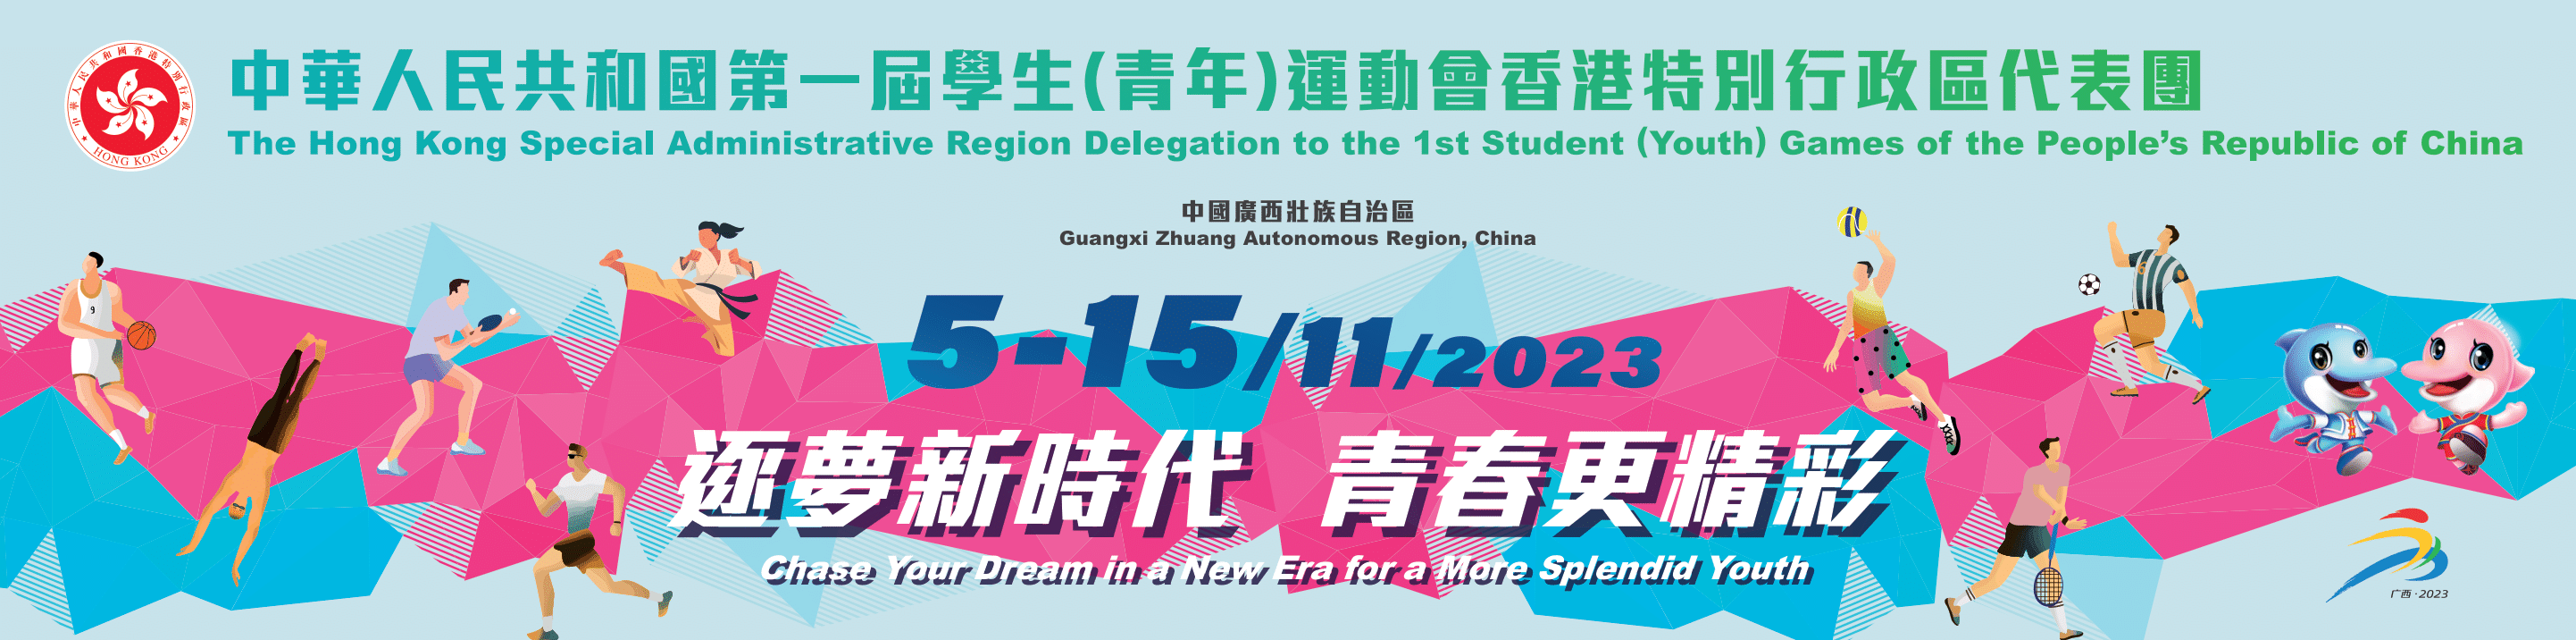 中華人民共和國第一屆學生（青年）運動會香港特別行政區代表團